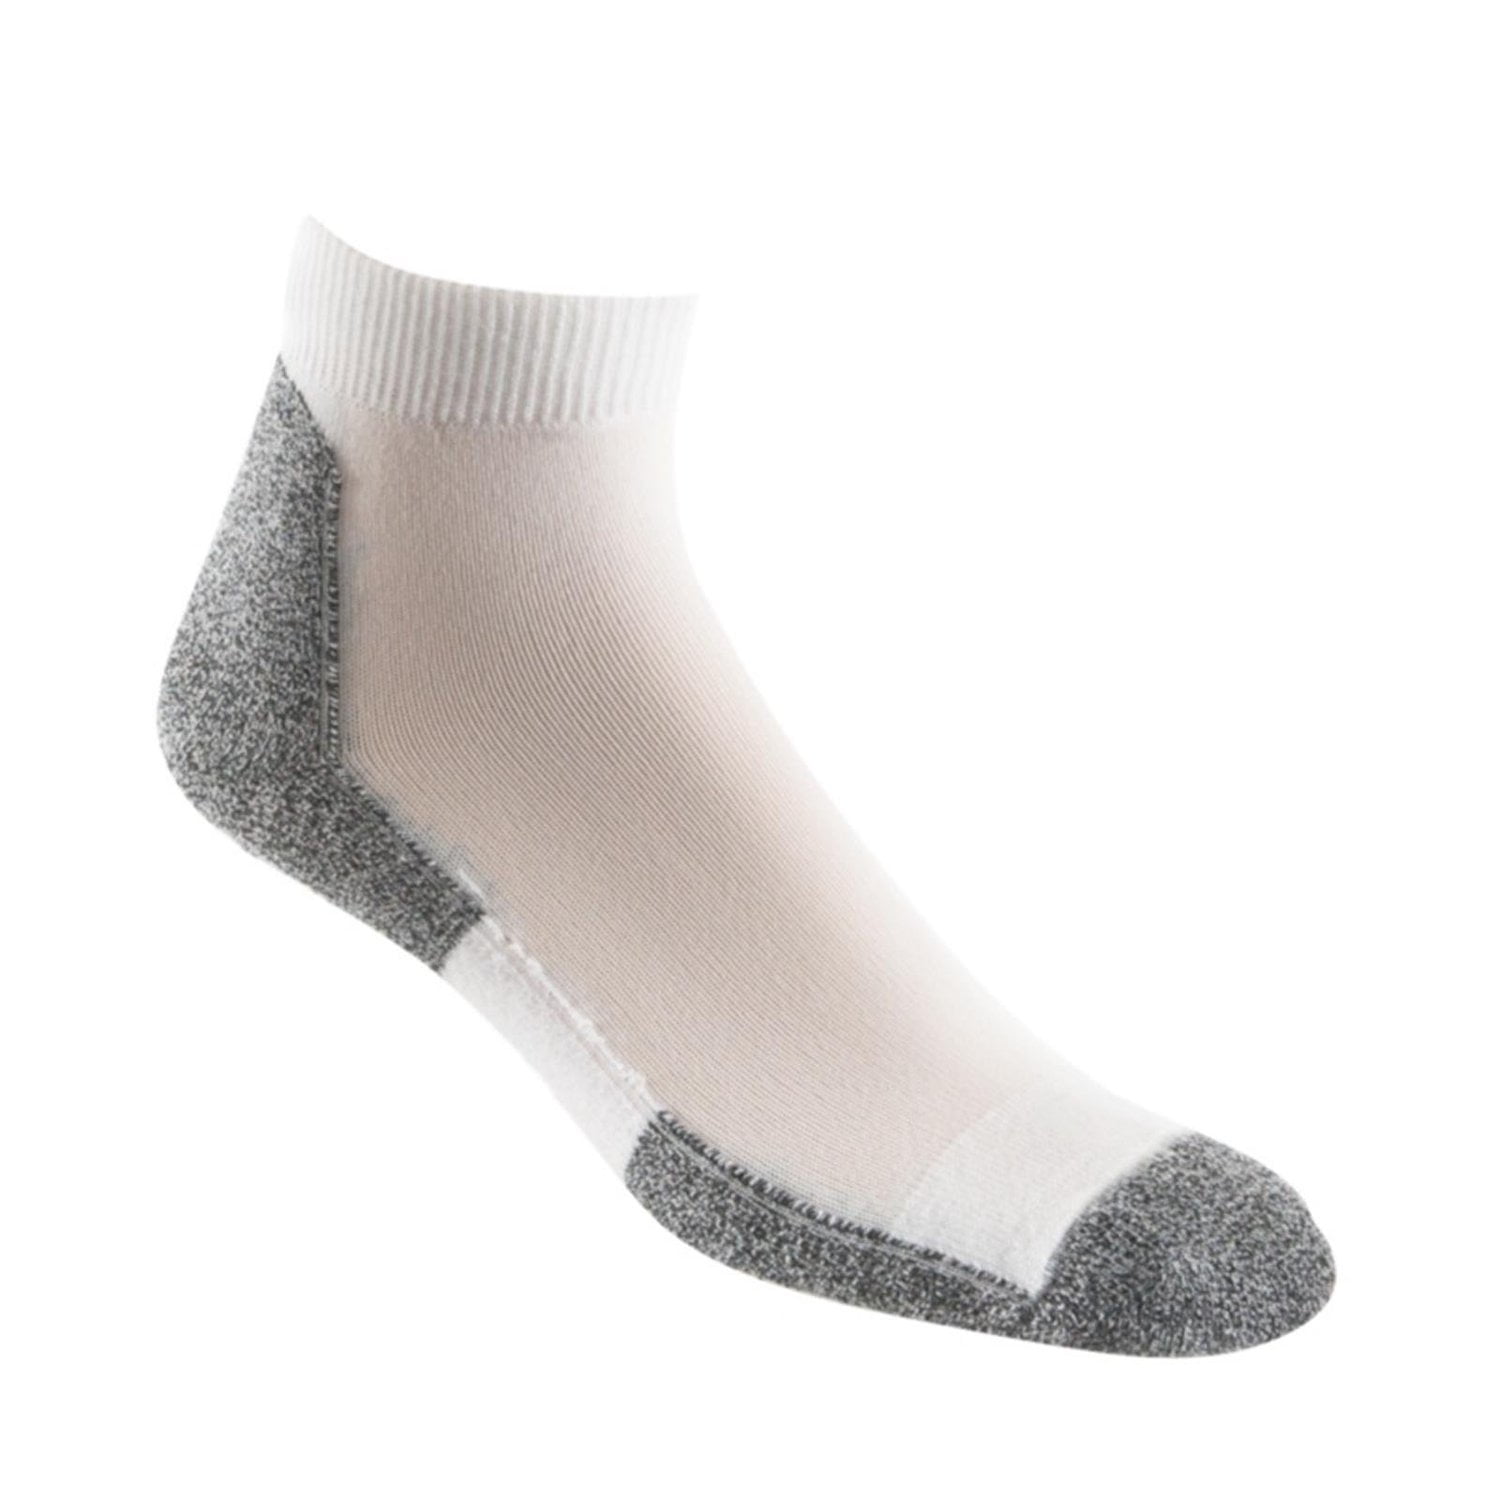 Thorlo - Thorlo Men's Lite Running Mini Crew Sock, White/Black, Medium ...